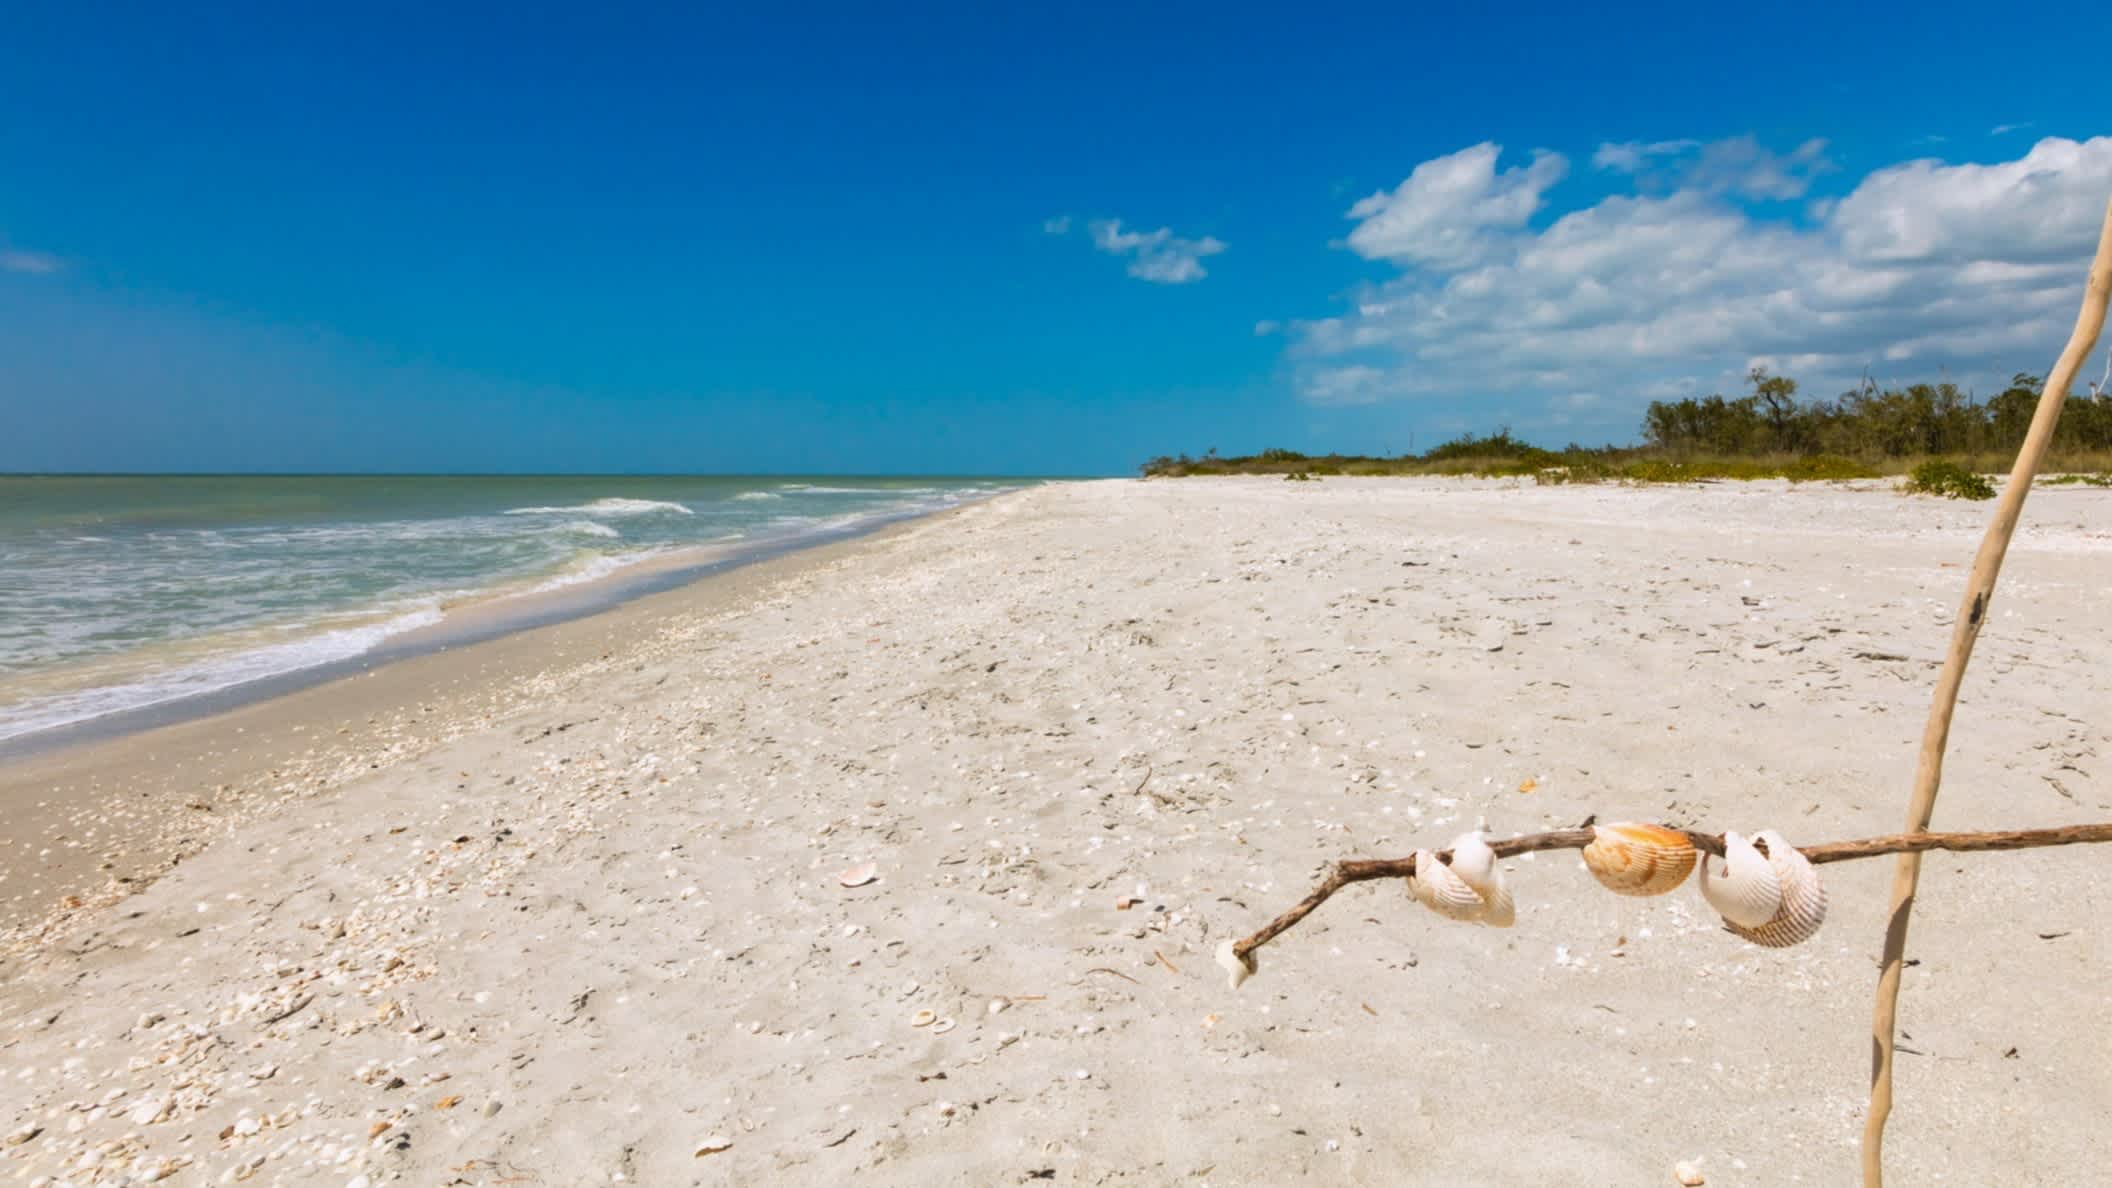 Der Strand von Sanibel Island, Lee County, Florida, USA bei purem Sonnenschein mit Blick auf den hellen Sand, das blaue Meer und natürliche Vegetation am Rand.